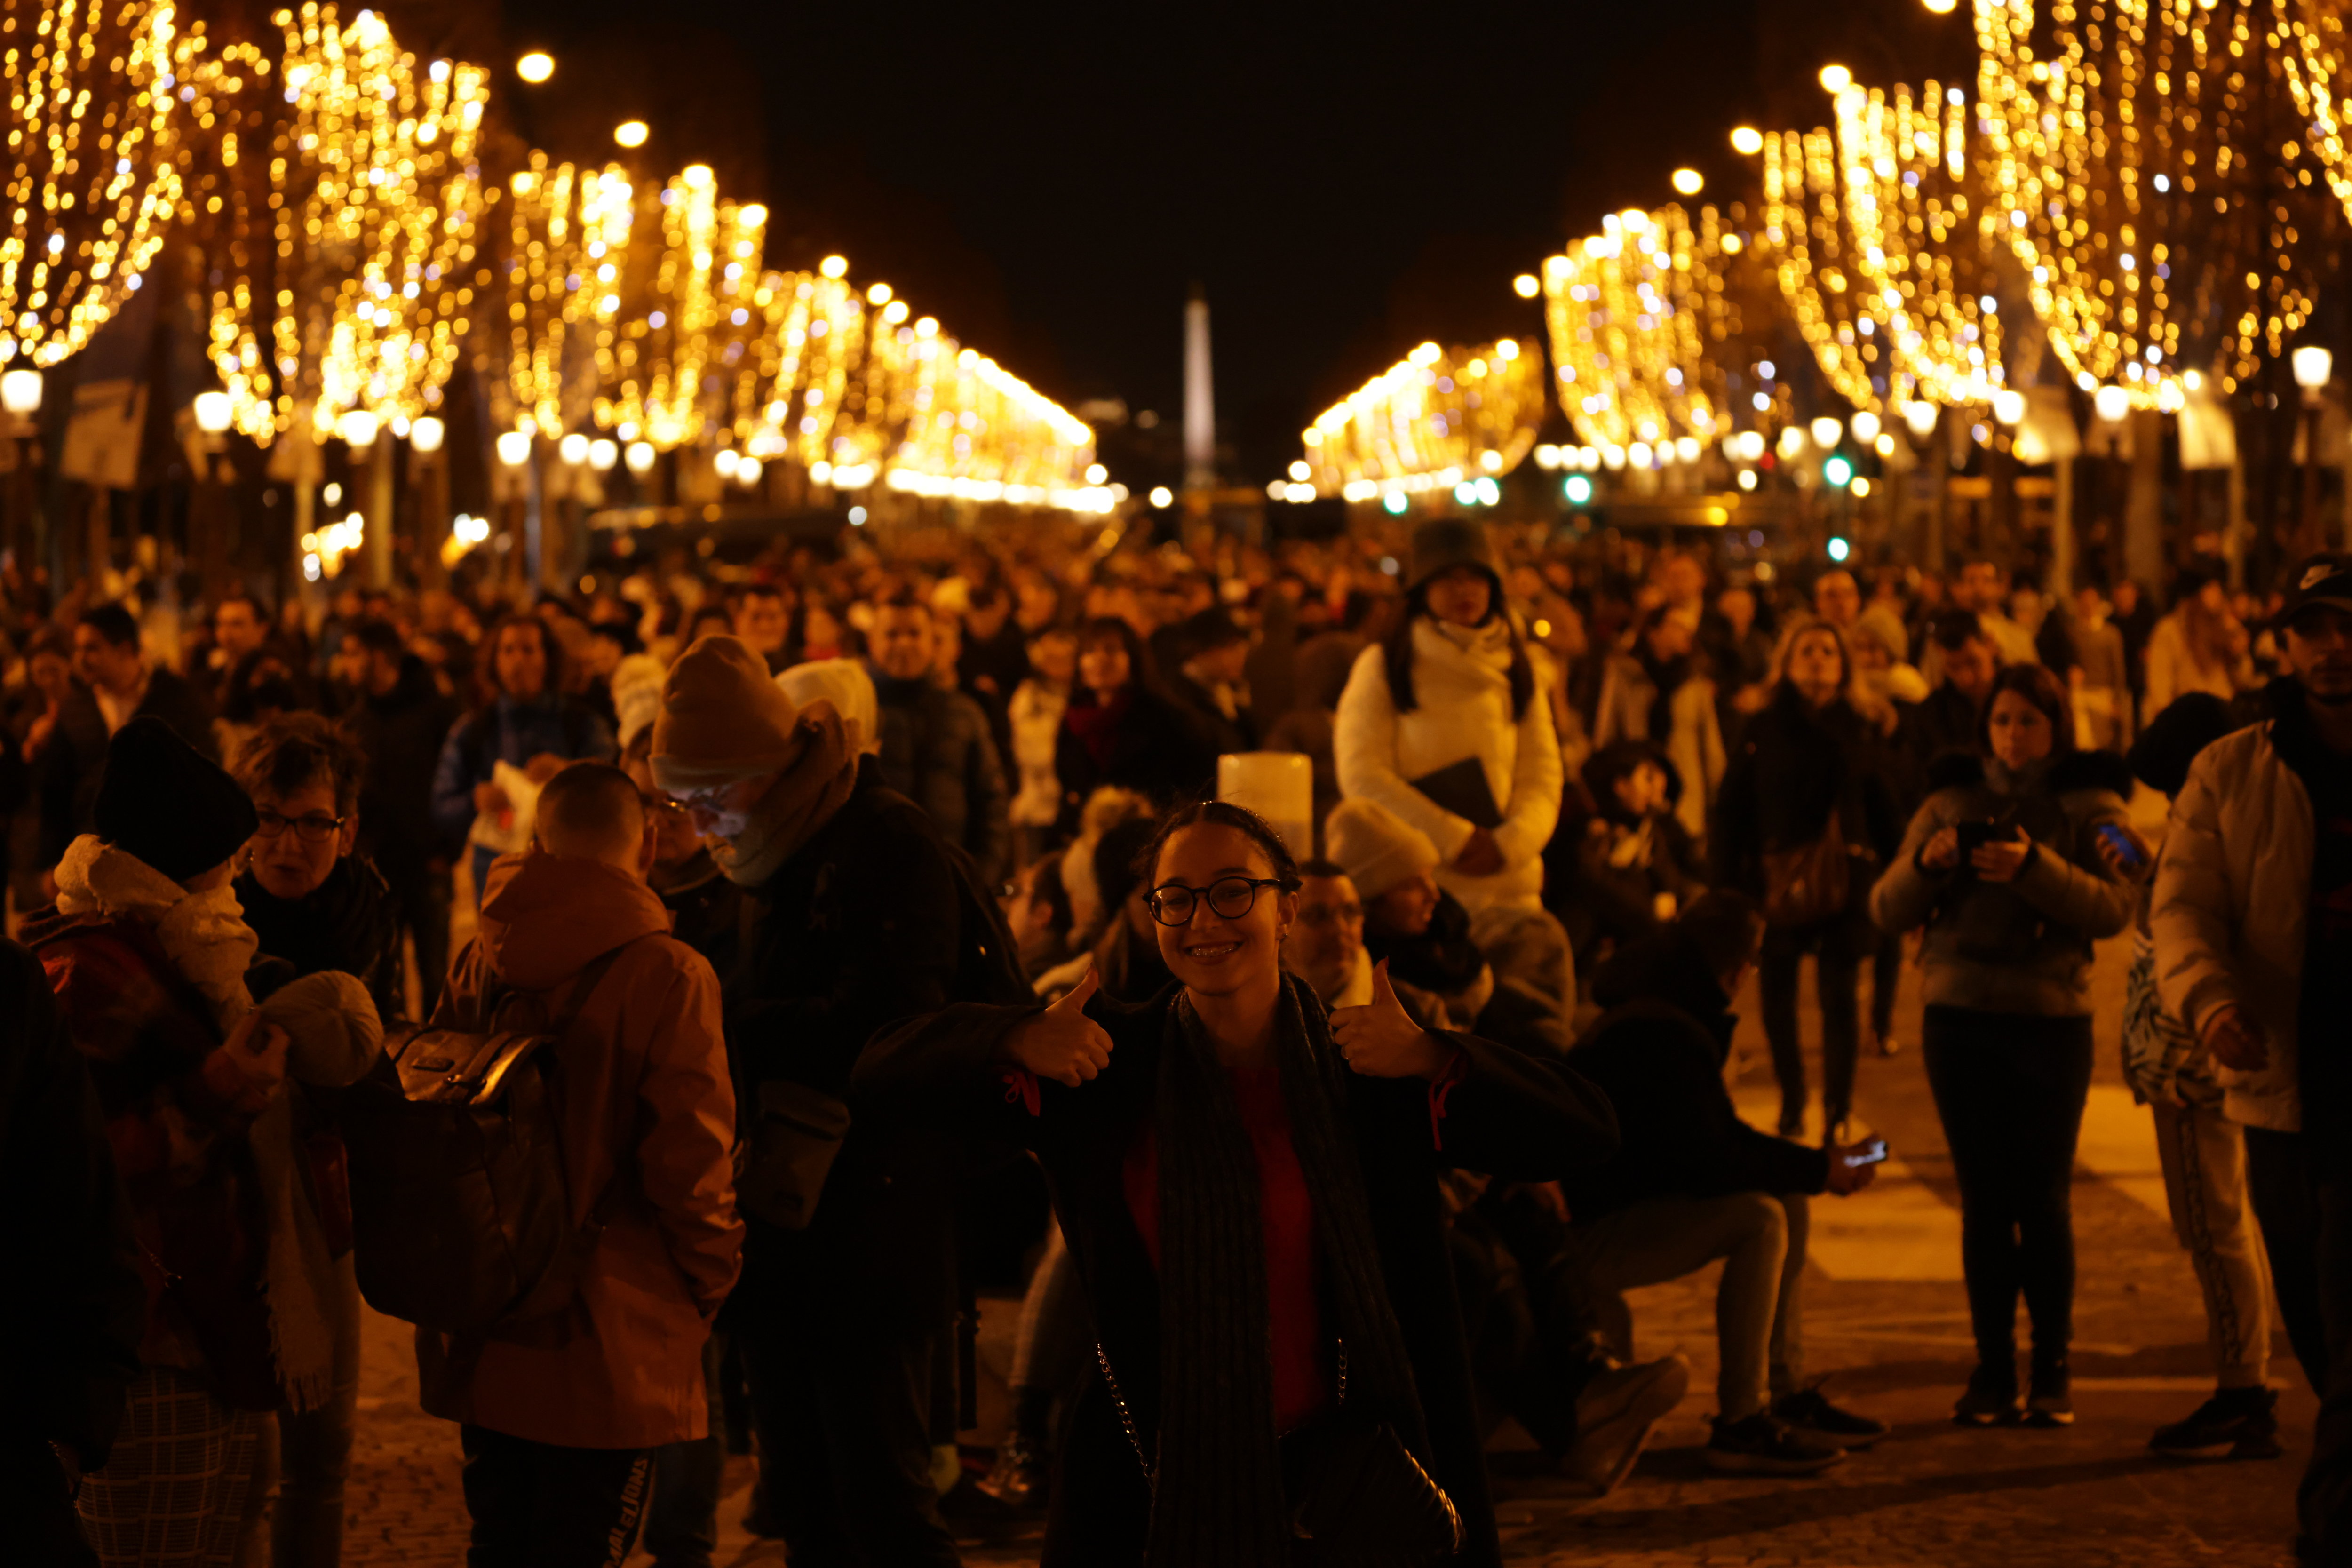 Réveillon à Paris : « Ce feu d'artifice a une portée symbolique